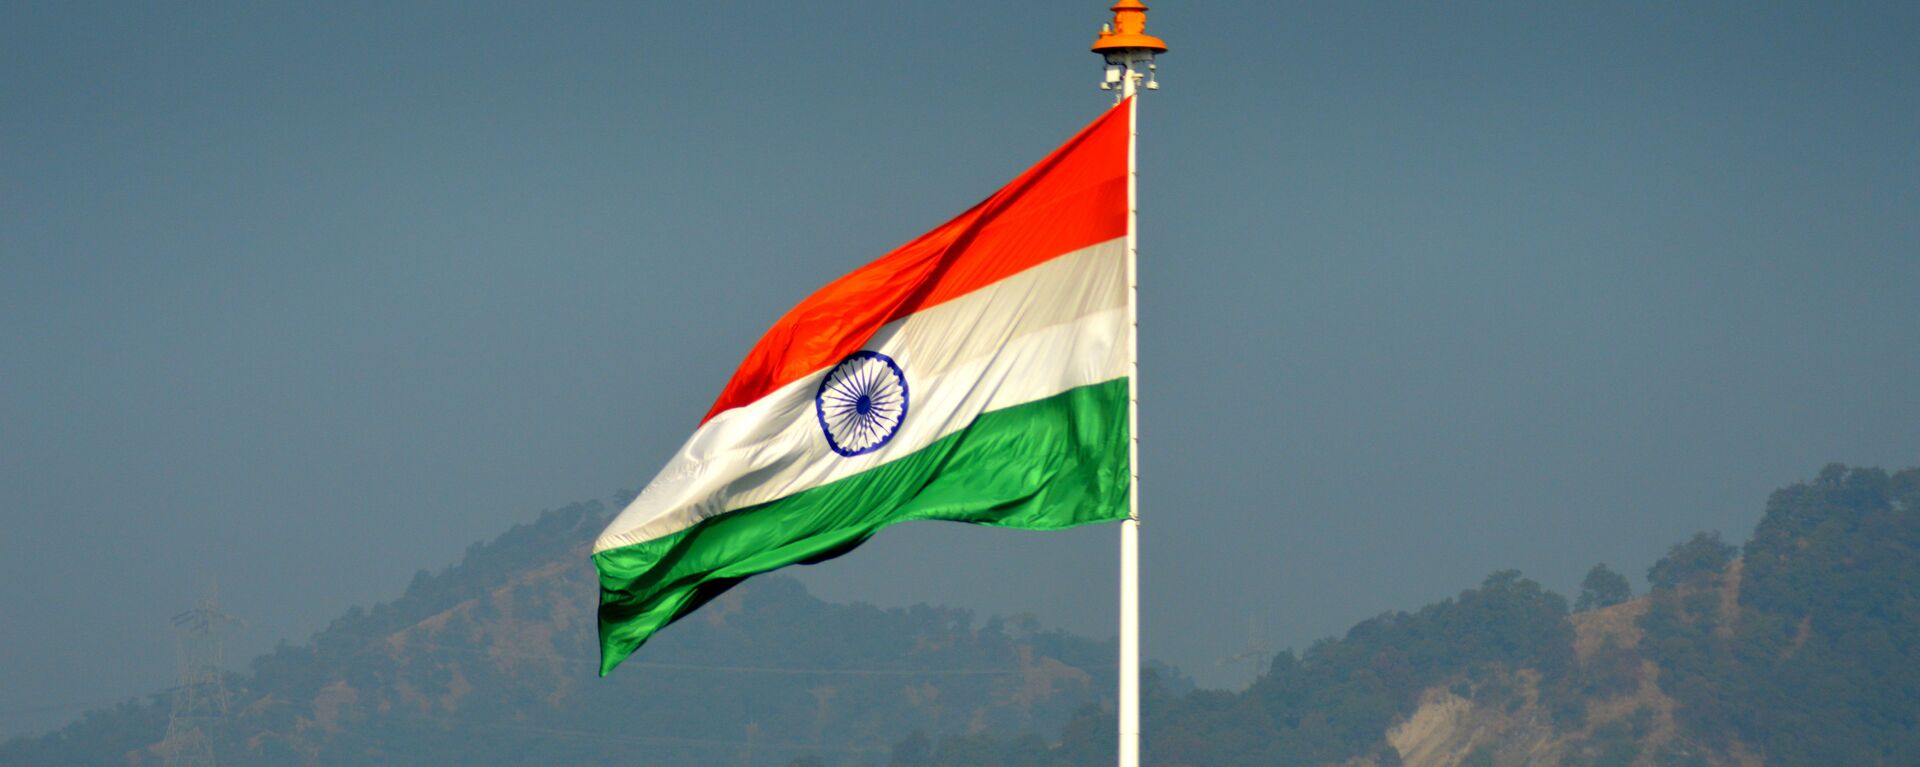 Indian flag - Sputnik International, 1920, 23.12.2020